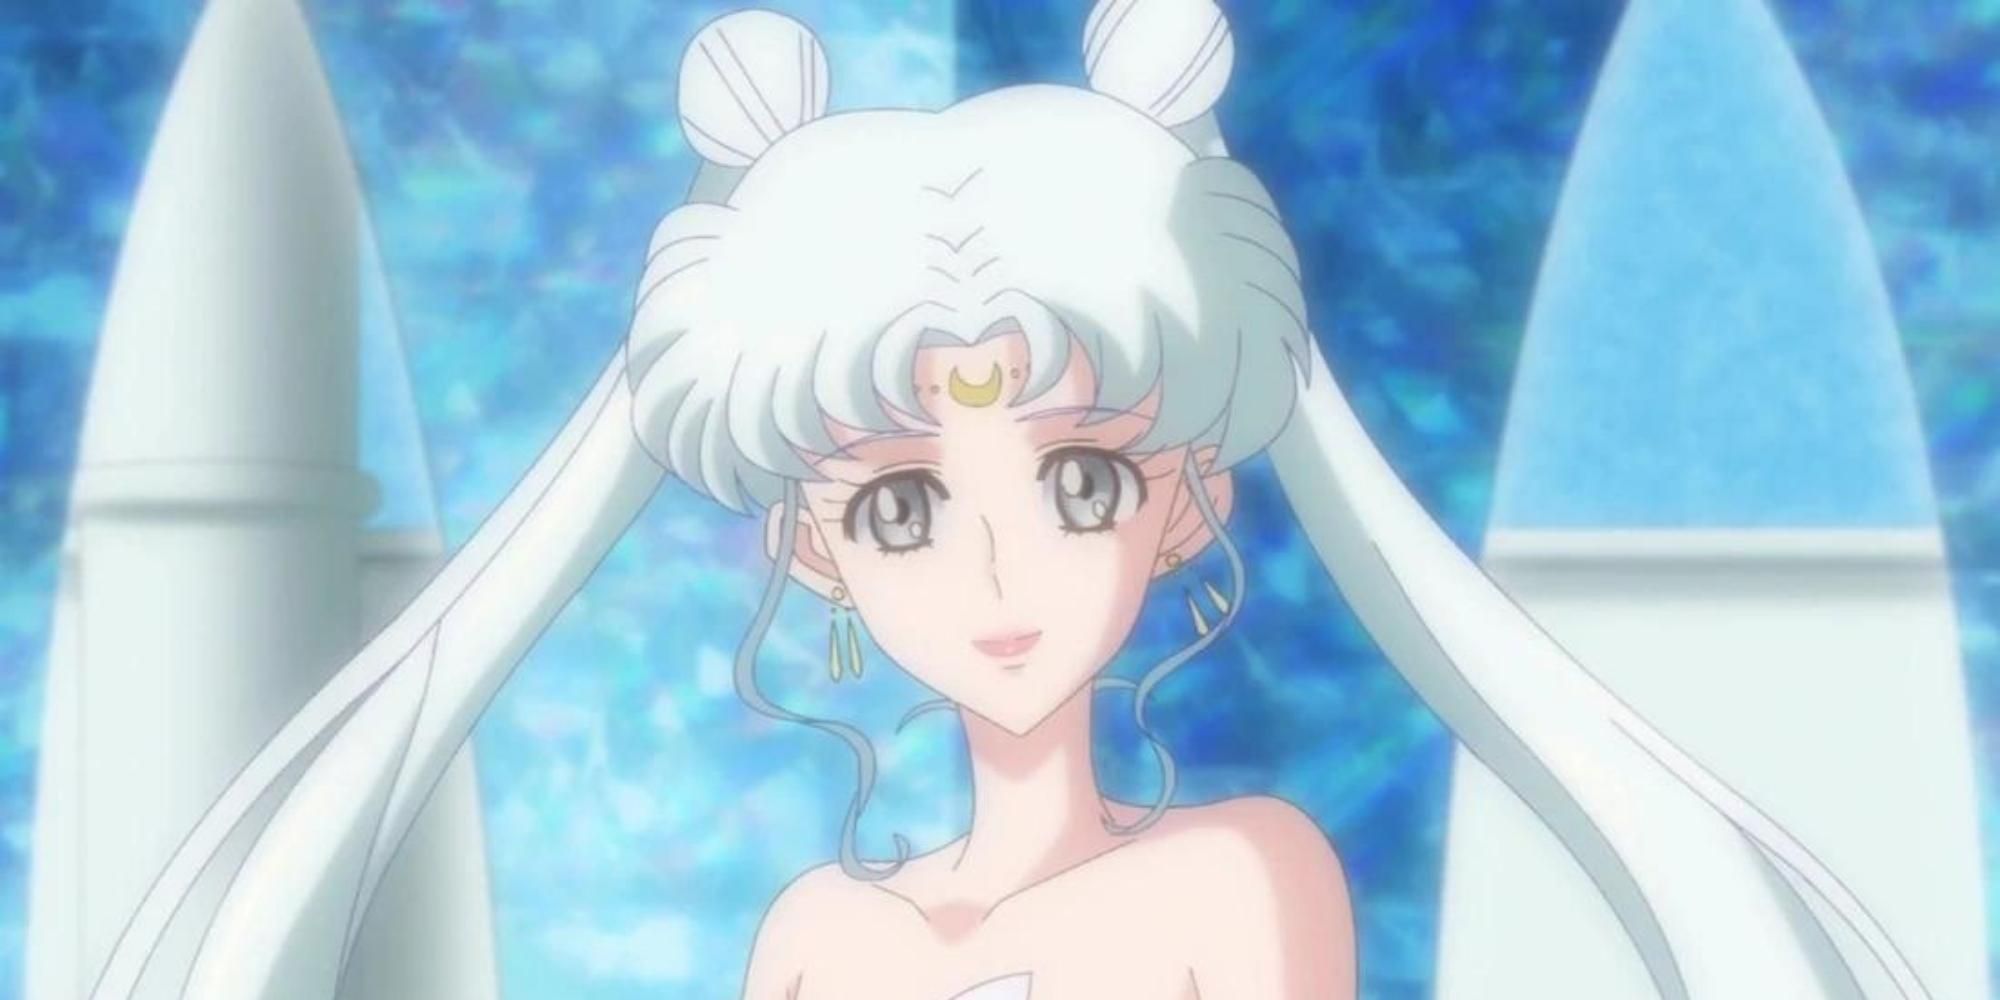 Queen Serenity in Sailor Moon